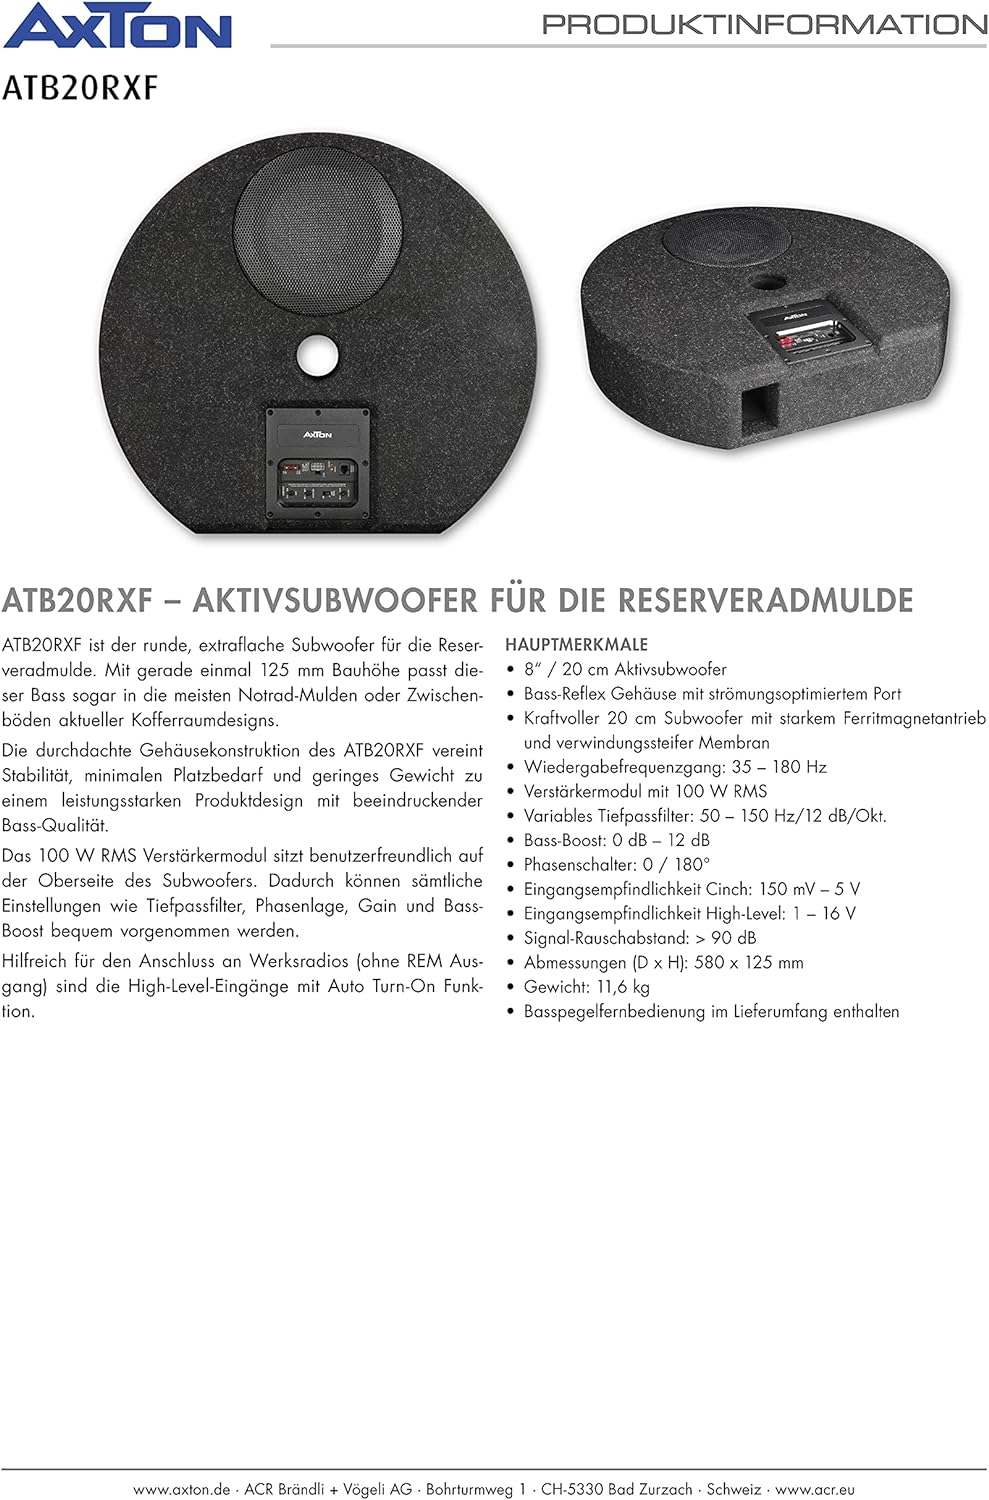 AXTON ATB20RXF Extraflacher 20 cm / 8" Aktivsubwoofer für die Reserveradmulde 100 W RMS